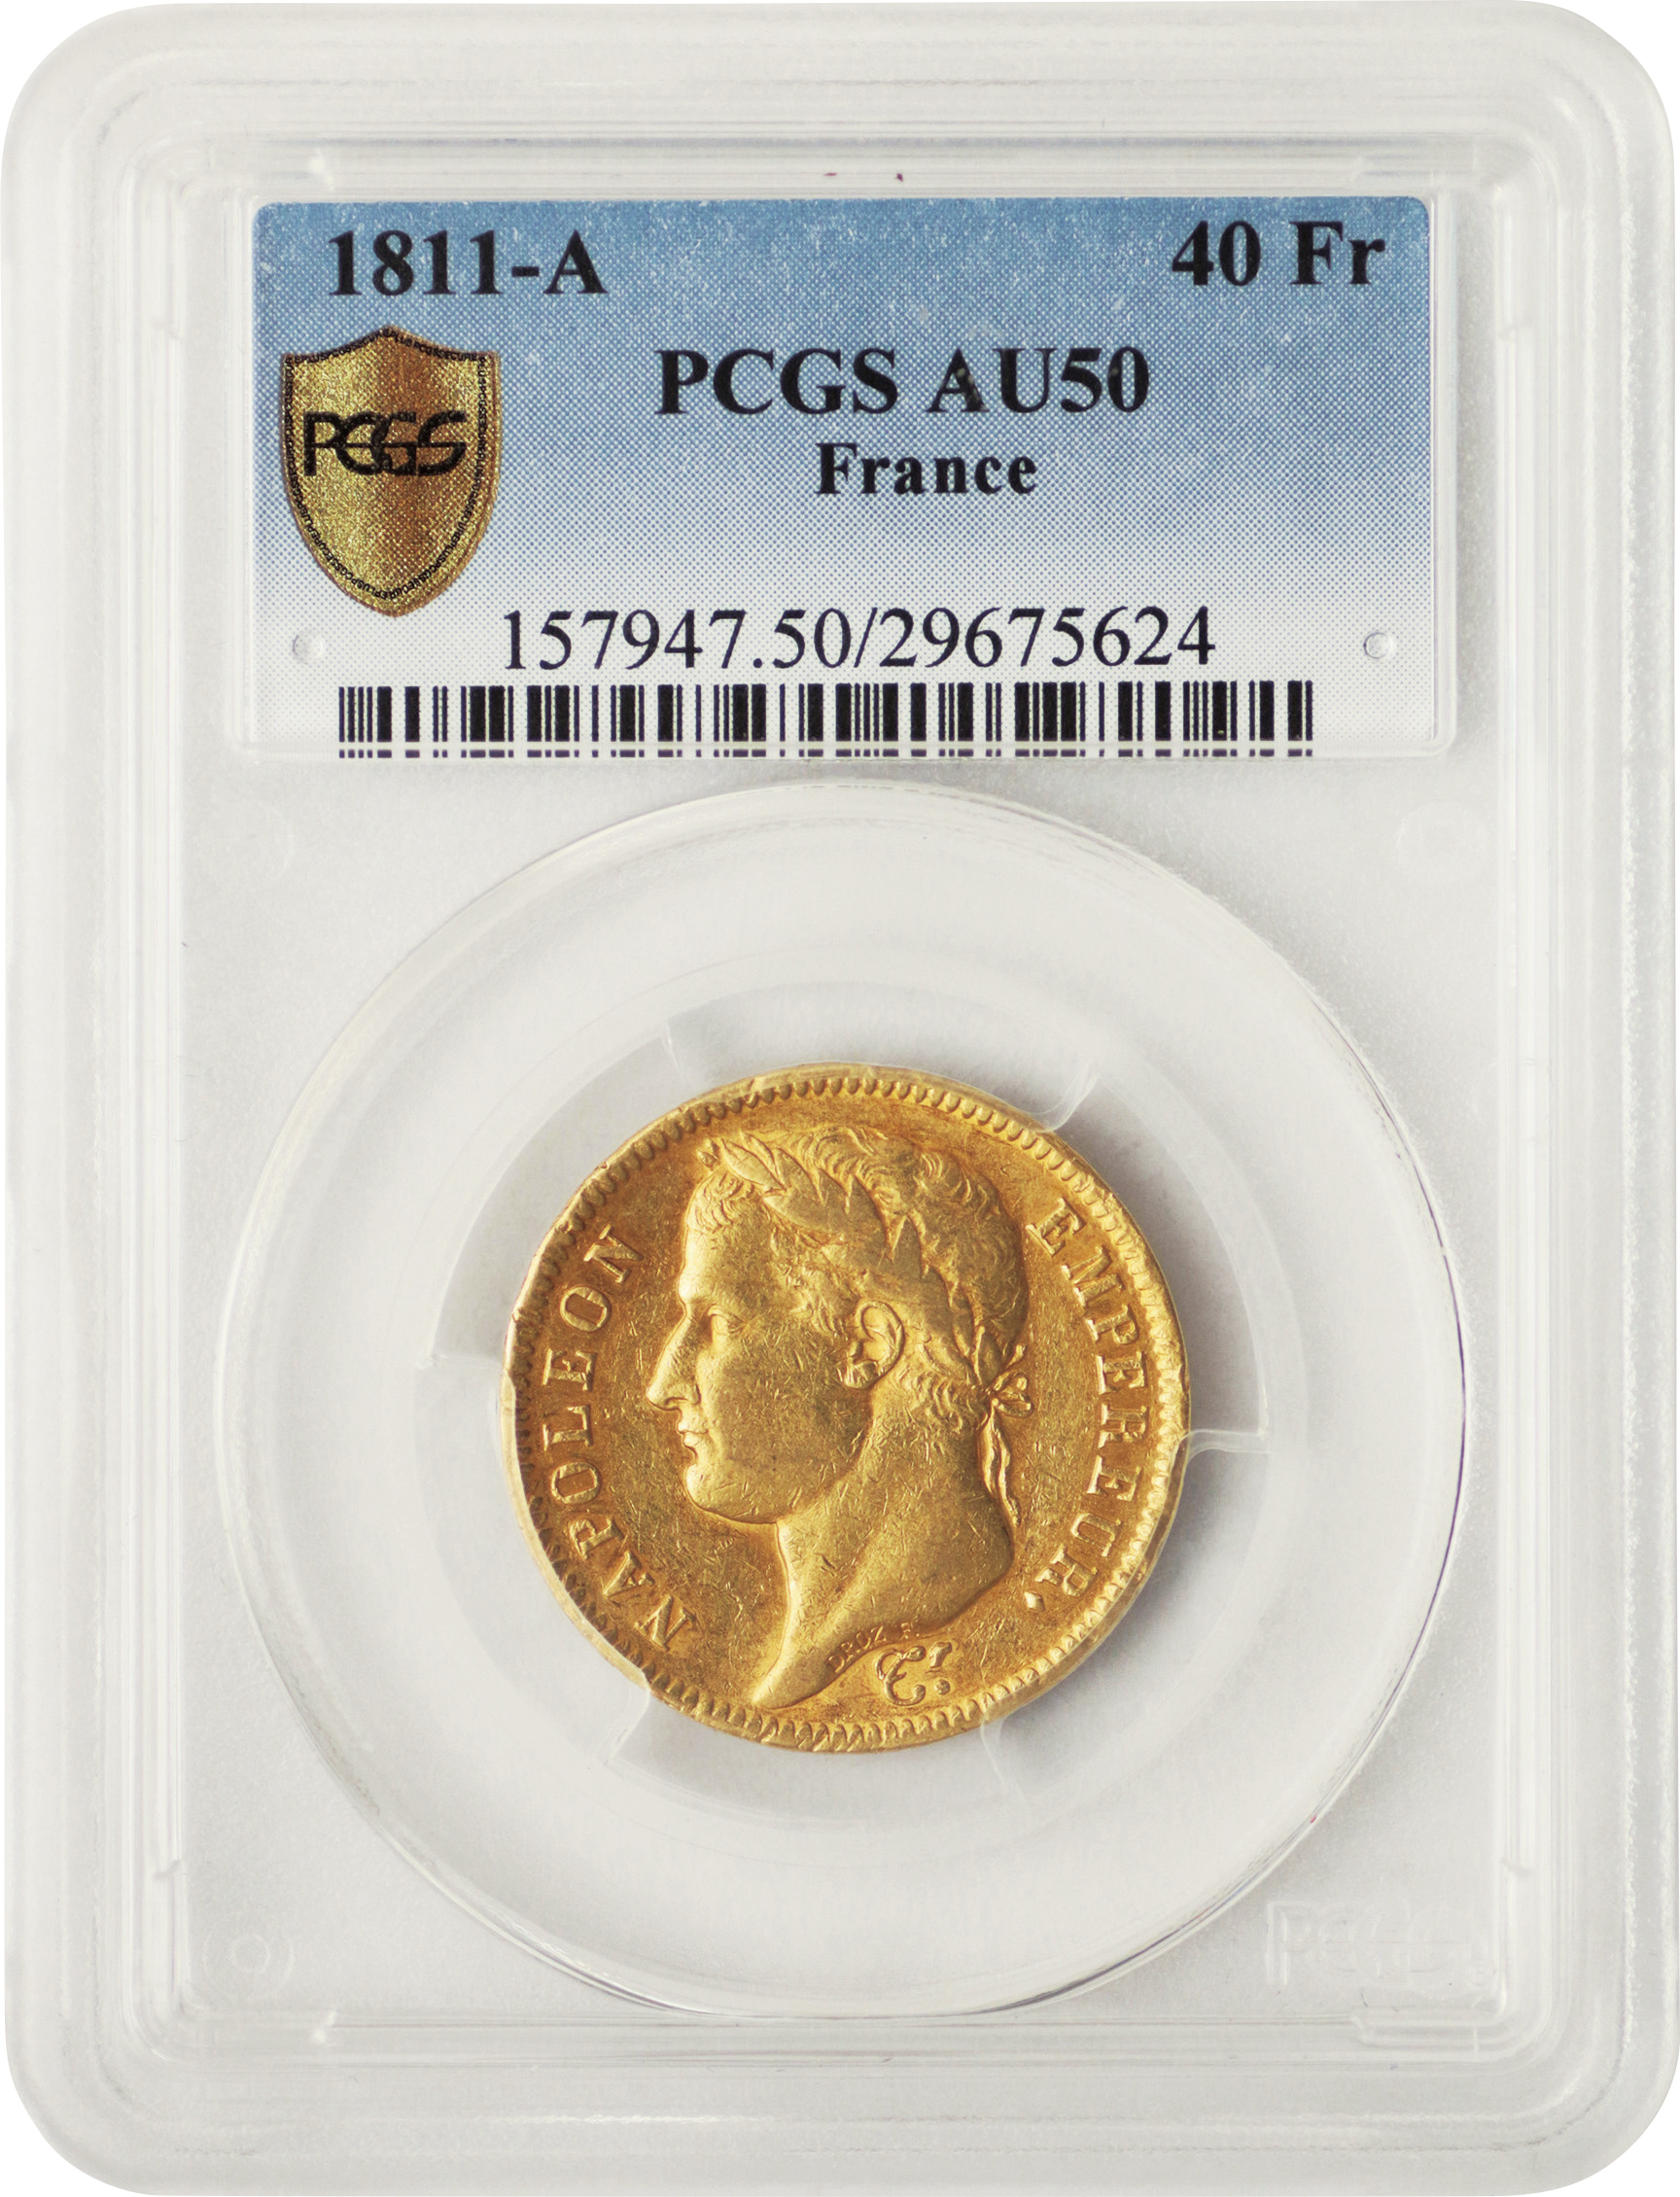 フランス 40フラン金貨1818年W PCGS AU58